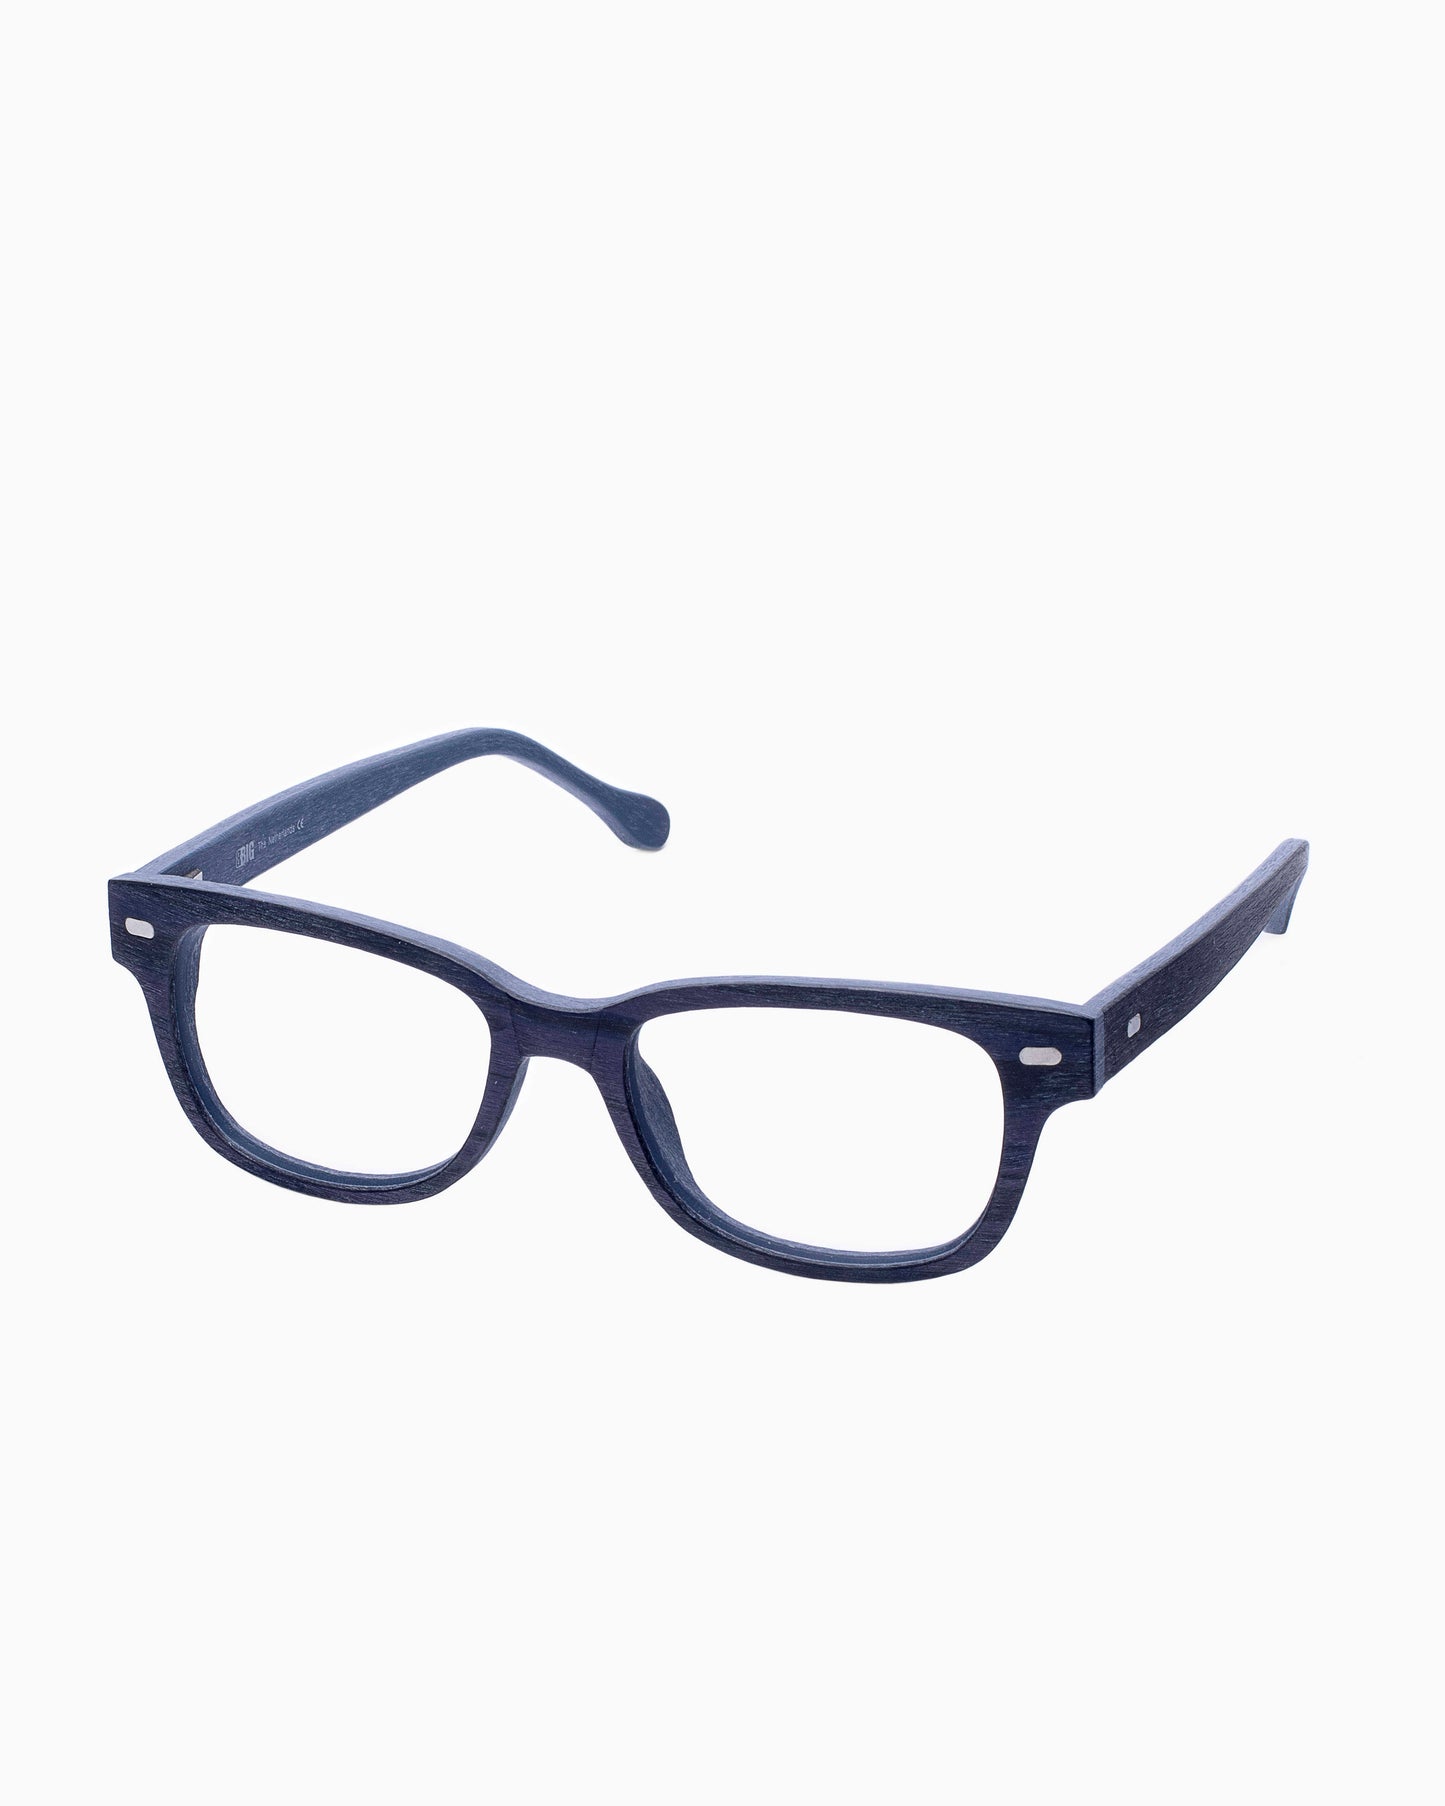 BBig - 3202 - 427 | Bar à lunettes